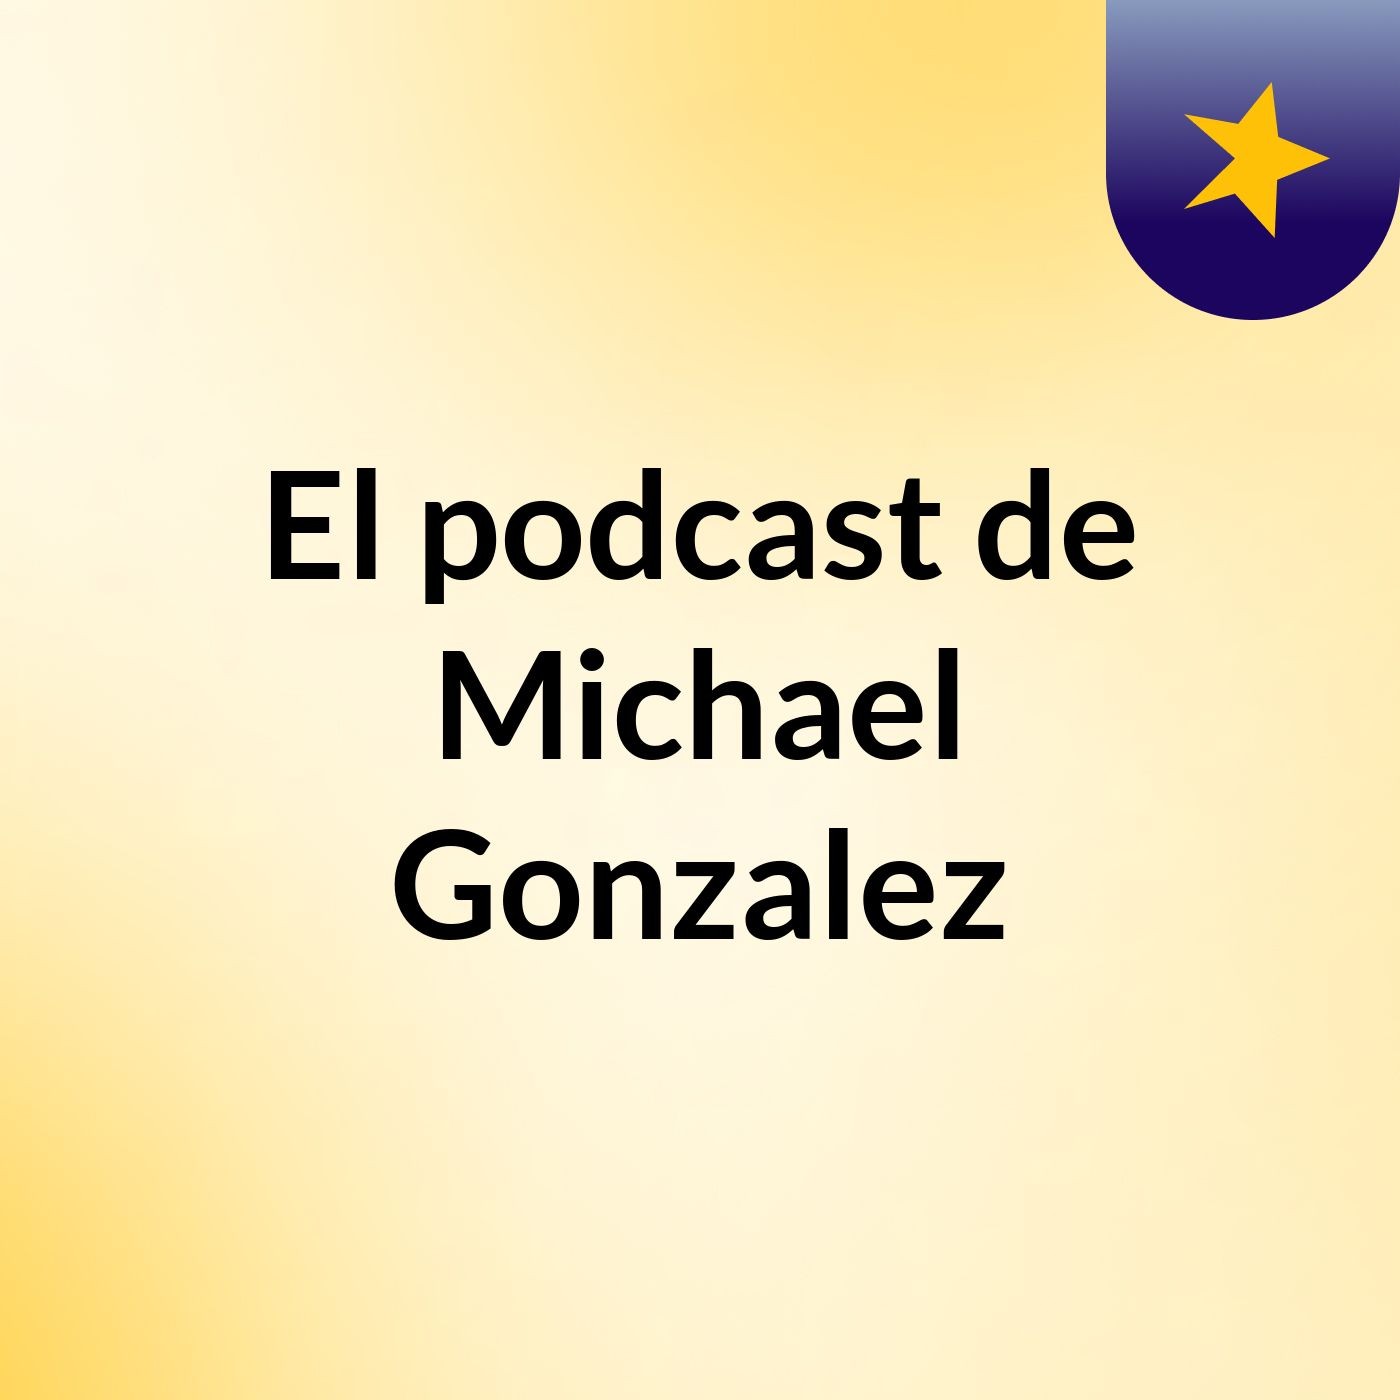 Episodio 3 - El podcast de Michael Gonzalez